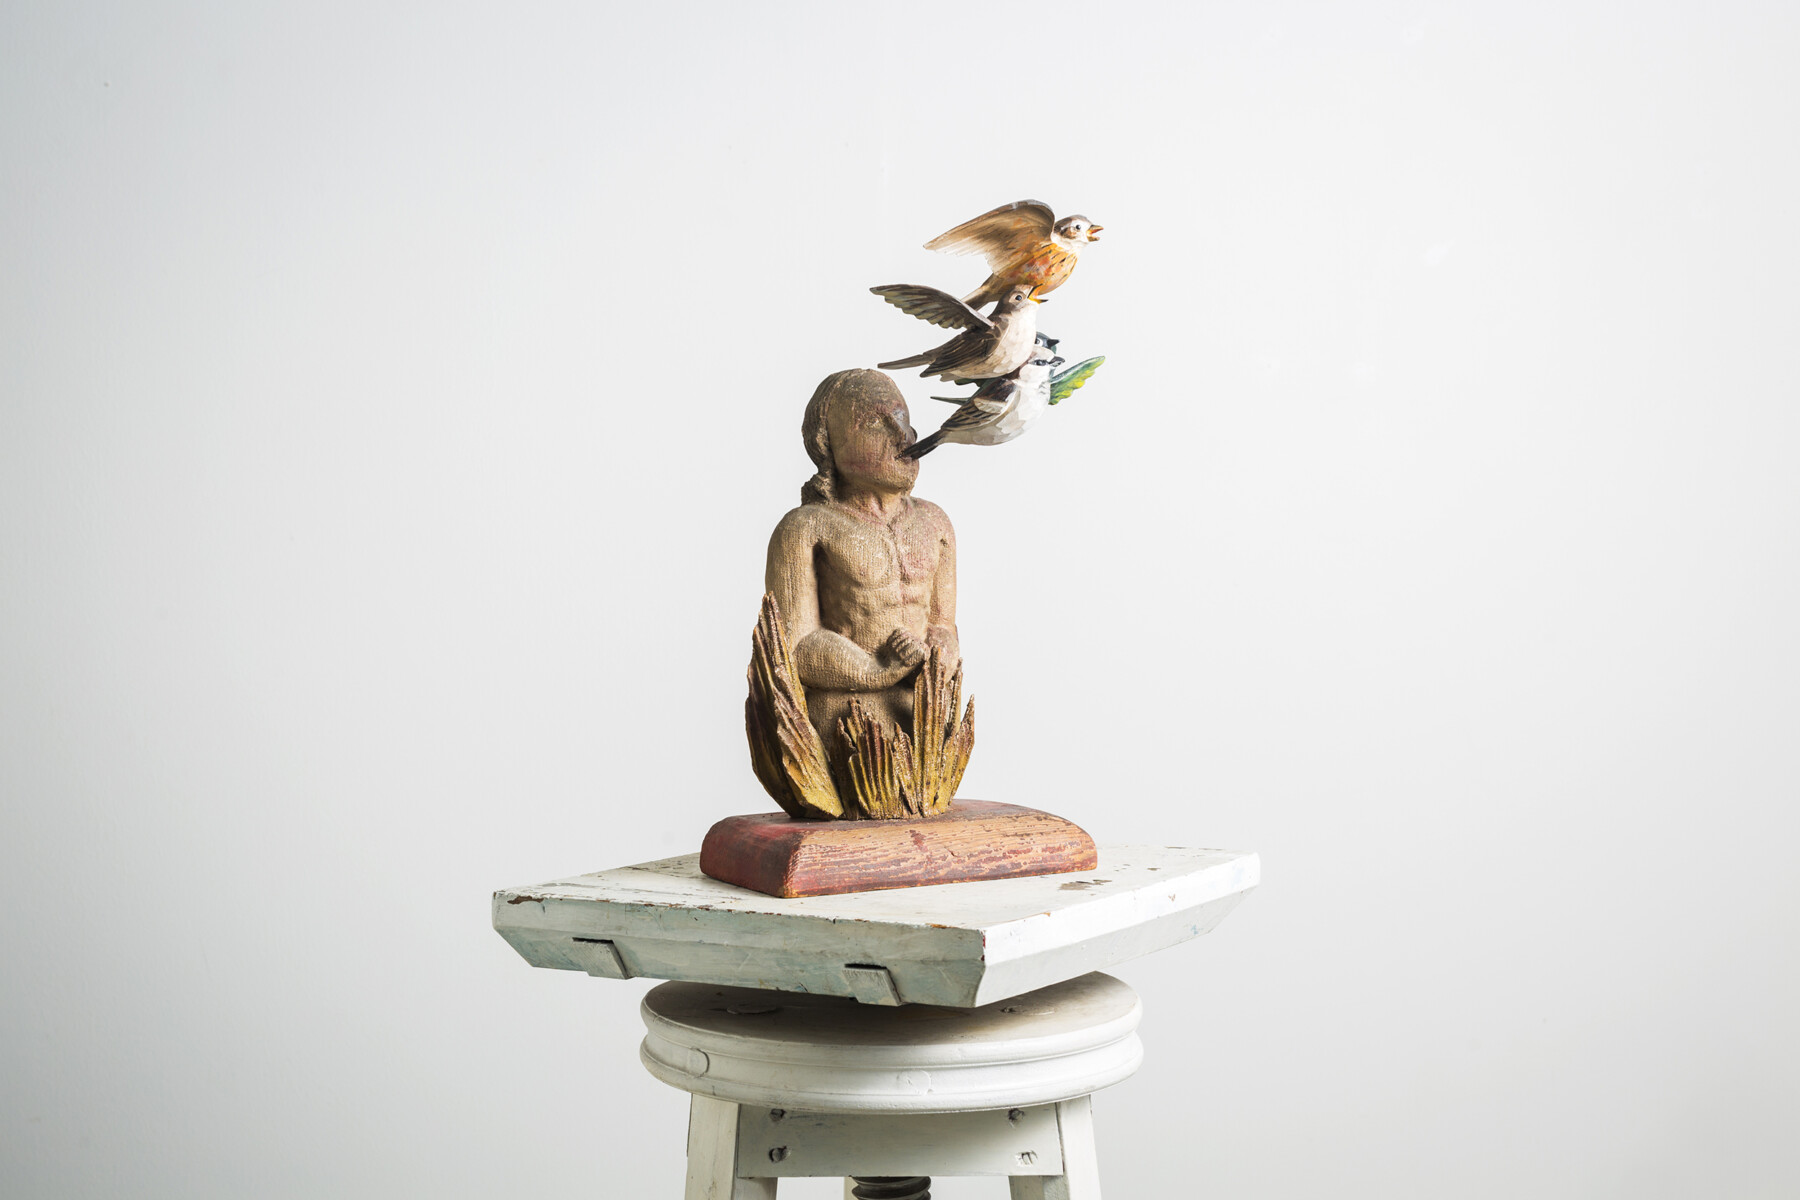 Auf einem Sockel steht die Skulptur eines Menschen mit mehreren bunten Vögeln, die in der Nähe seines Kopfes oder möglicherweise aus seinem Kopf herausfliegen.